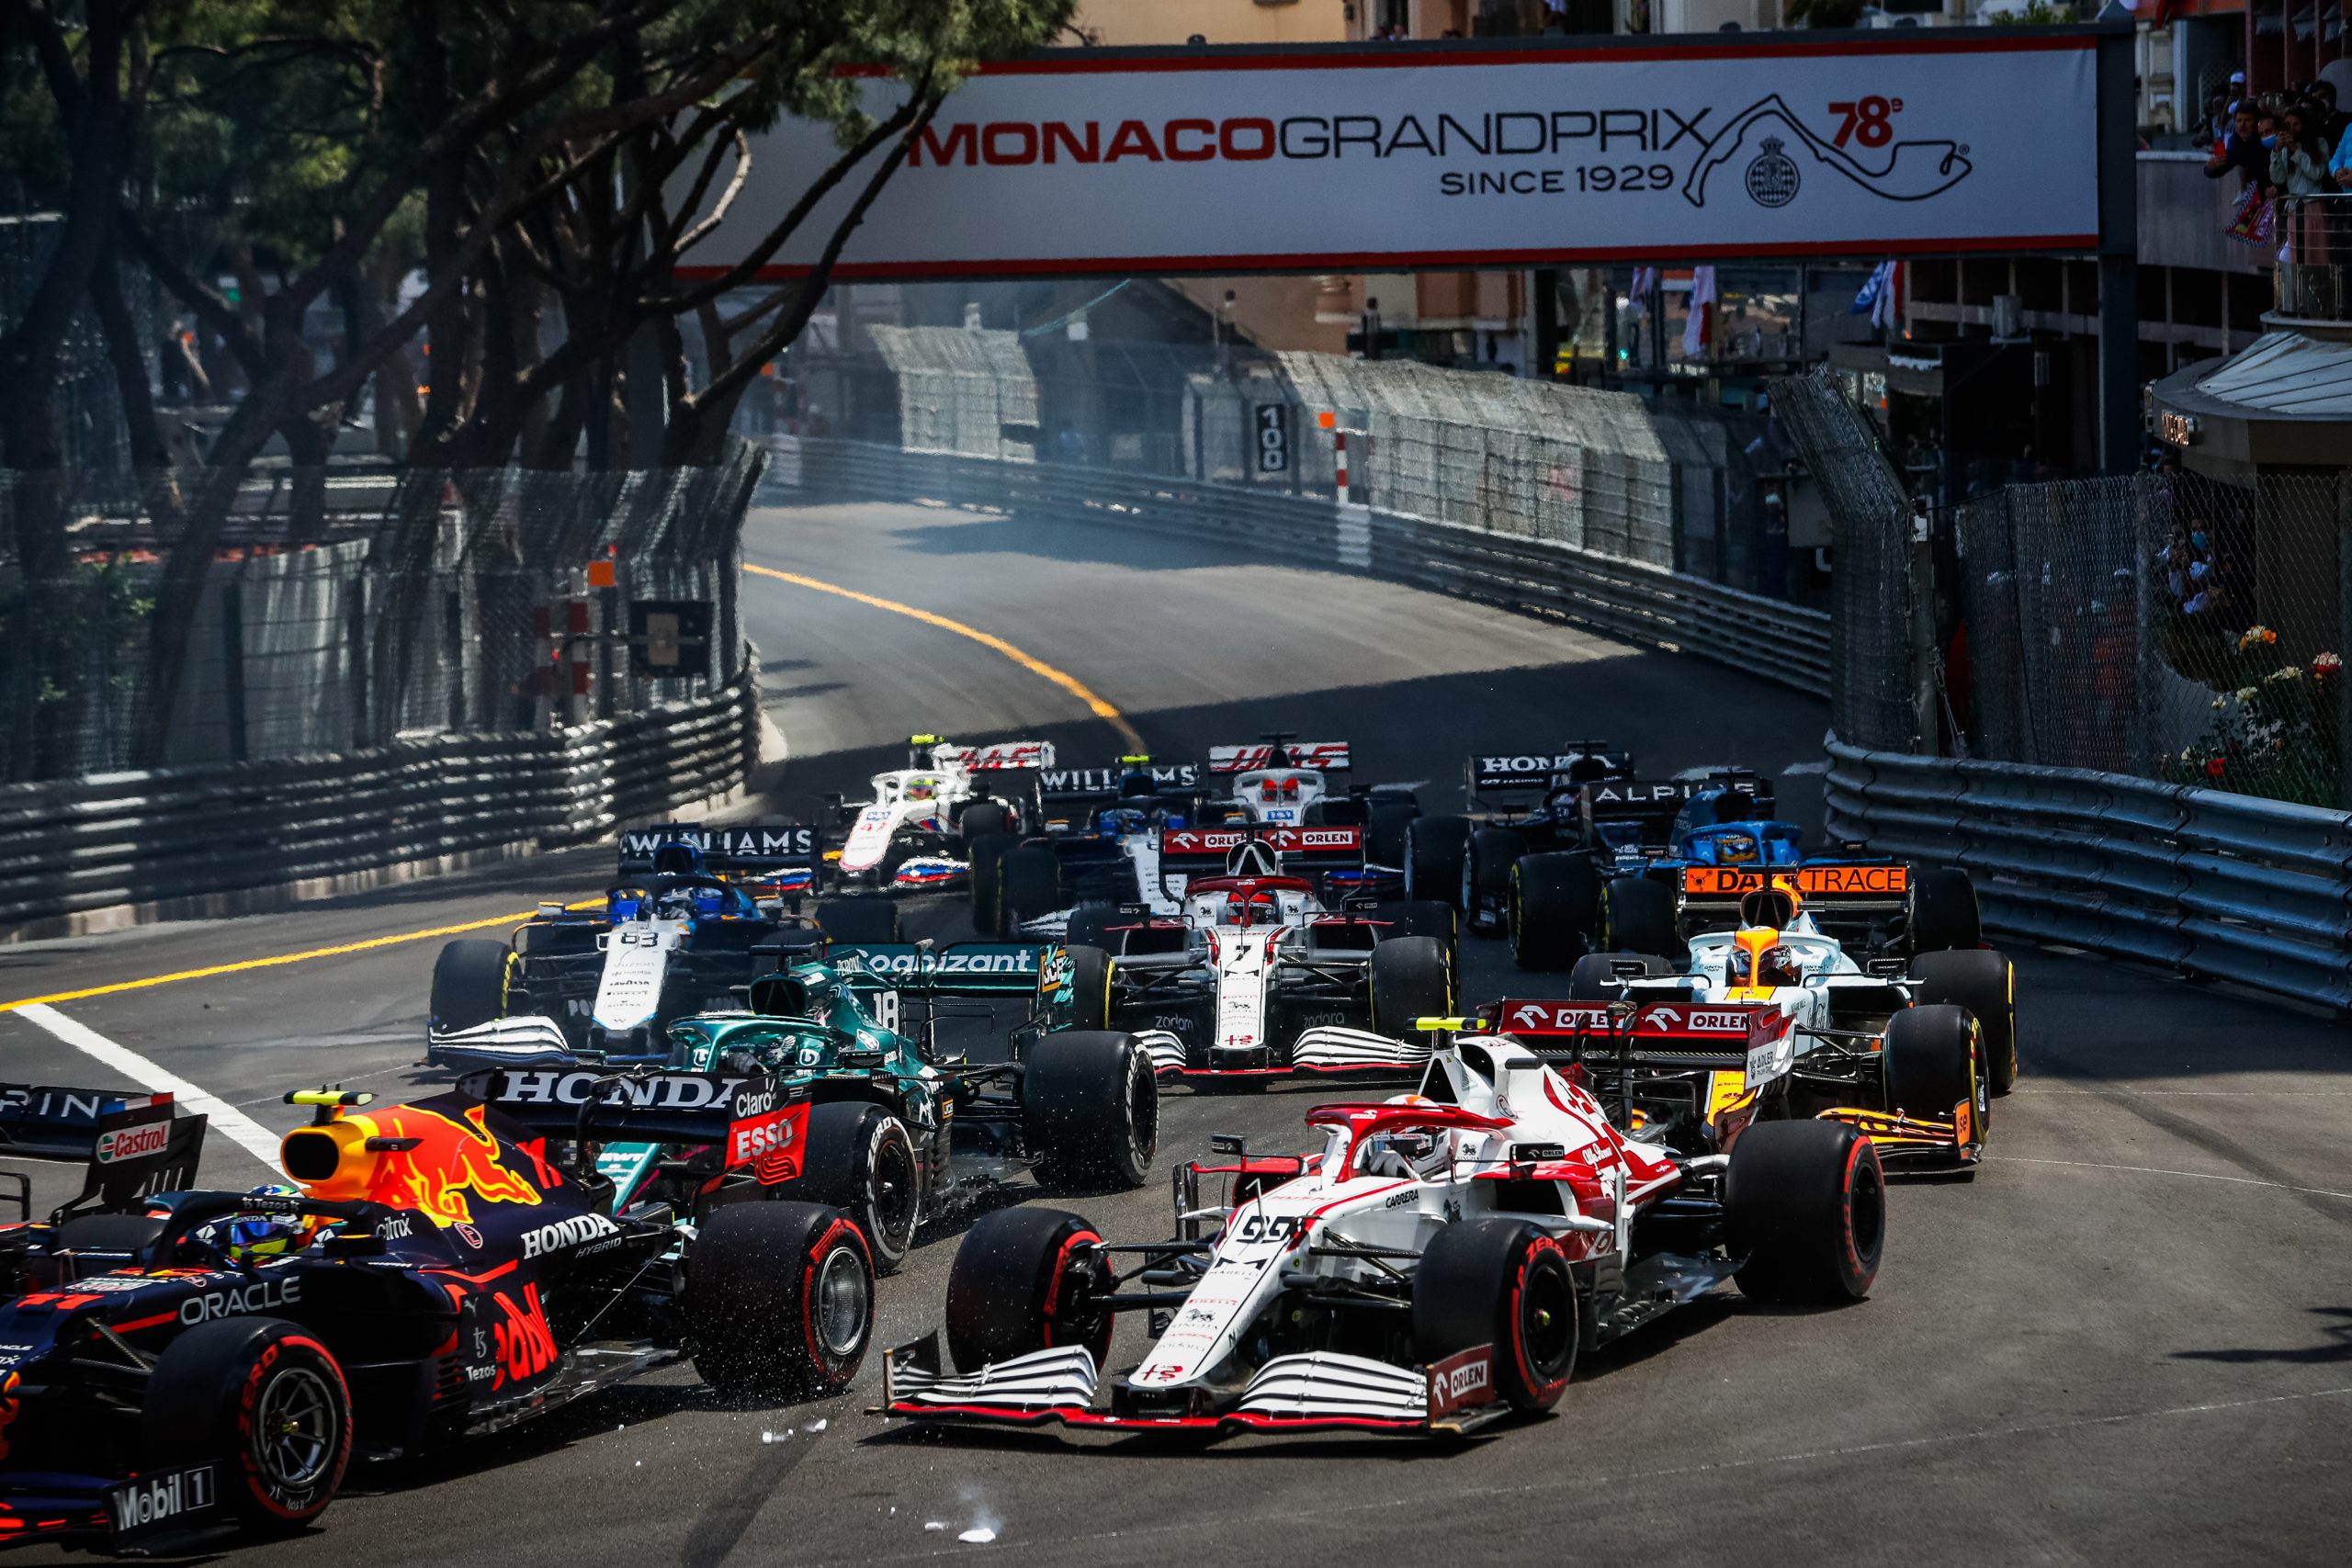 F1 – MONACO GRAND PRIX 2021 – RACE